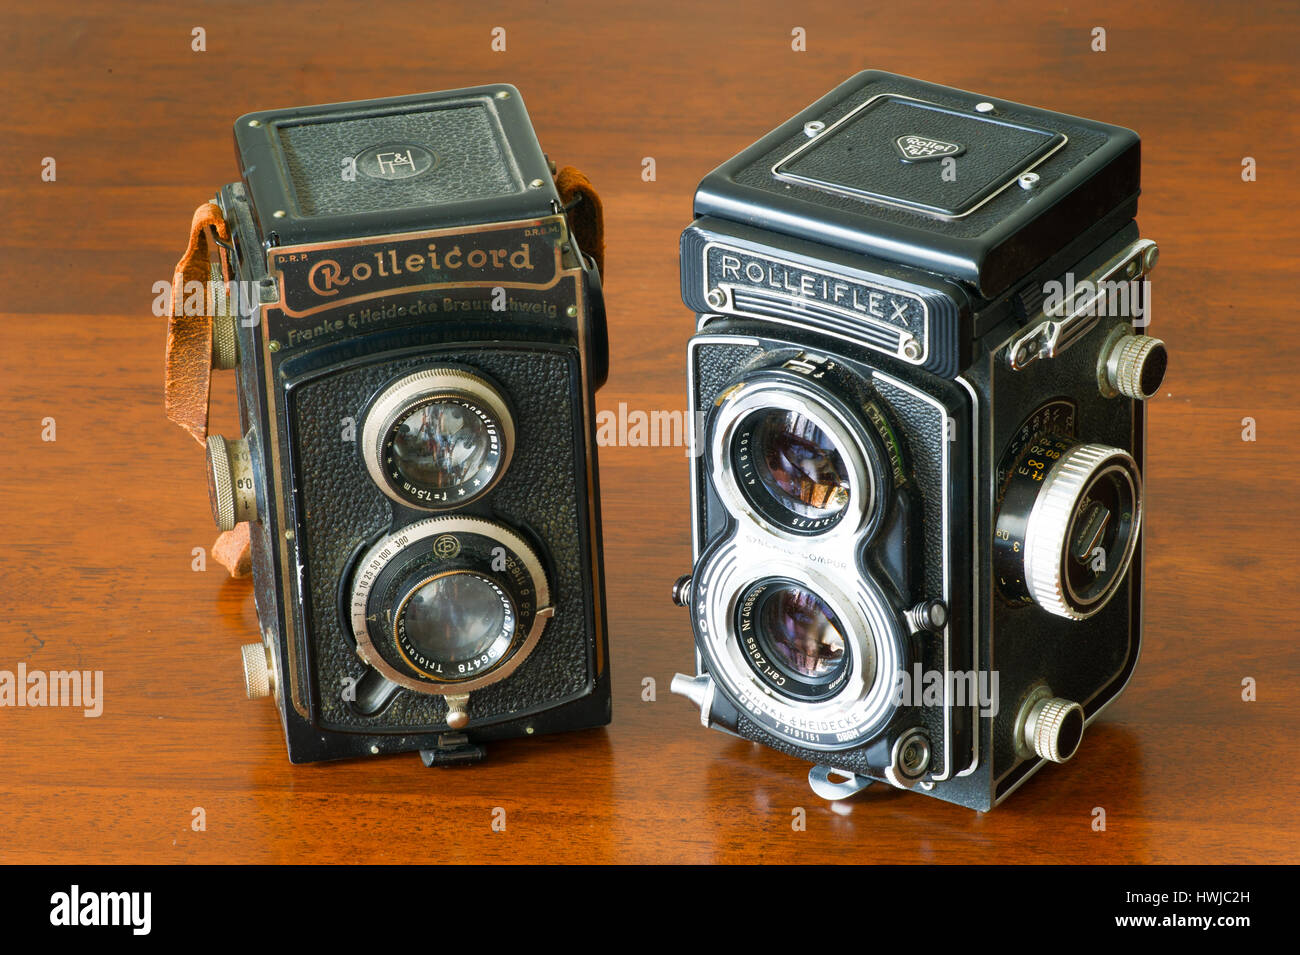 Collezionabili Vintage paio di bioptical Rolleicord e Rolleiflex fotocamera ancora la vita sul tavolo di legno Foto Stock